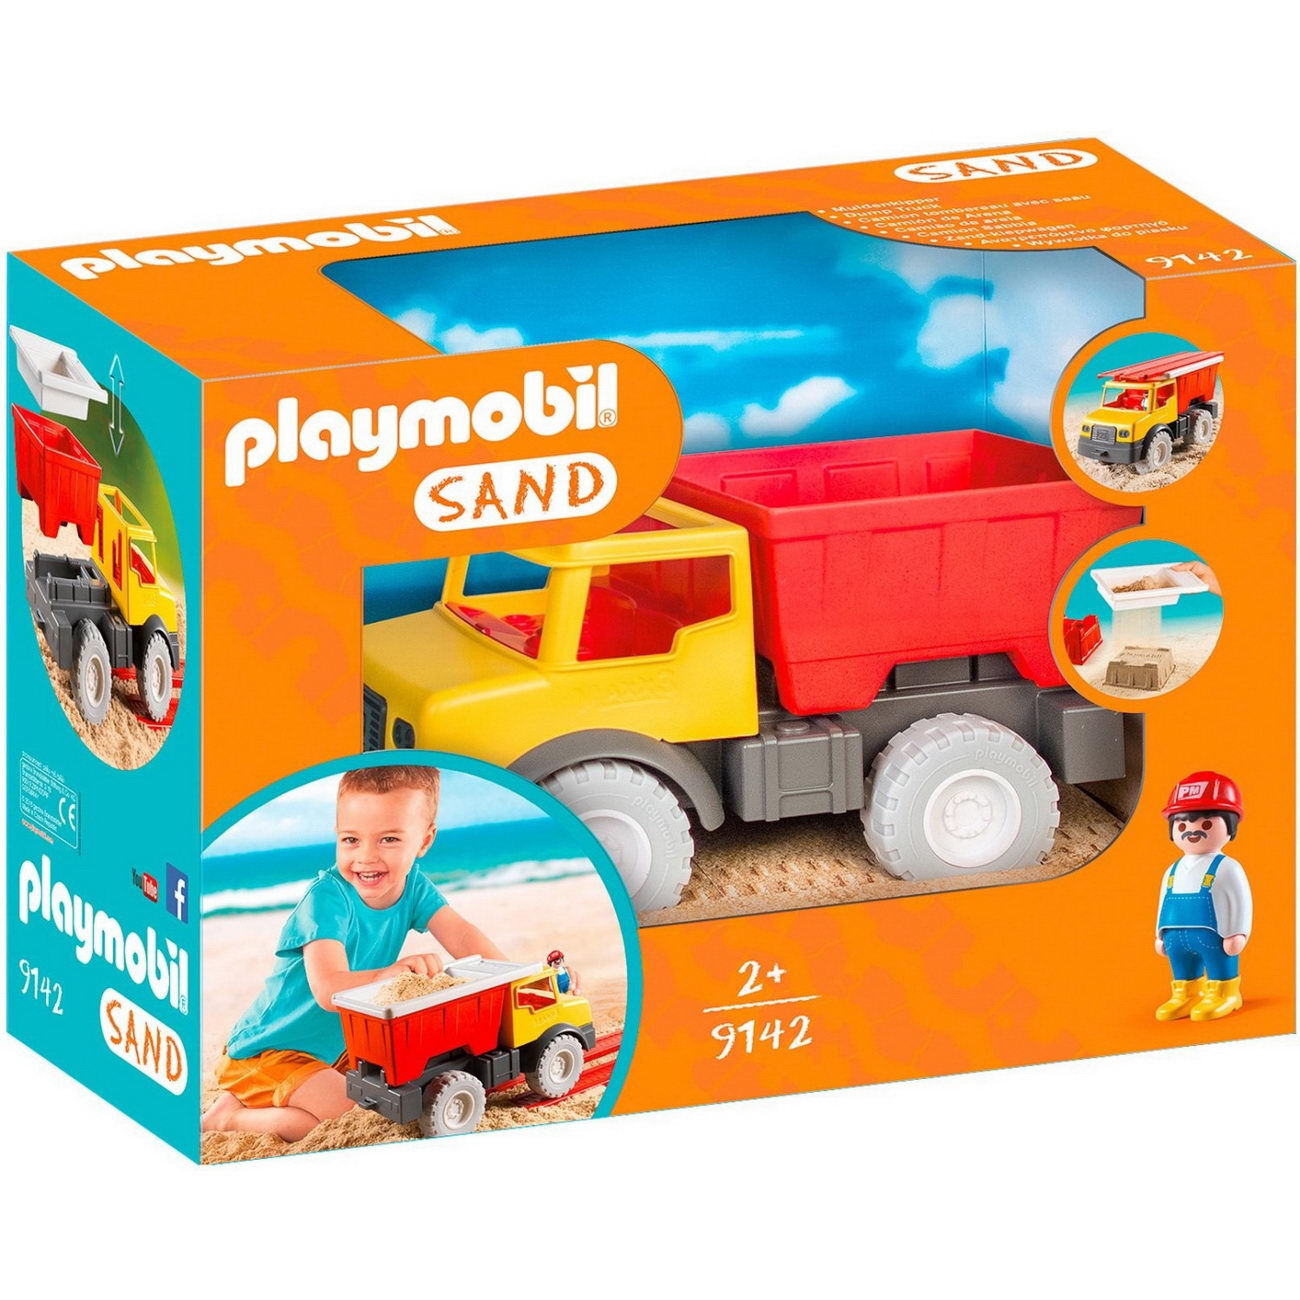 Playmobil 9142 - Muldenkipper - 1.2.3 / Sand